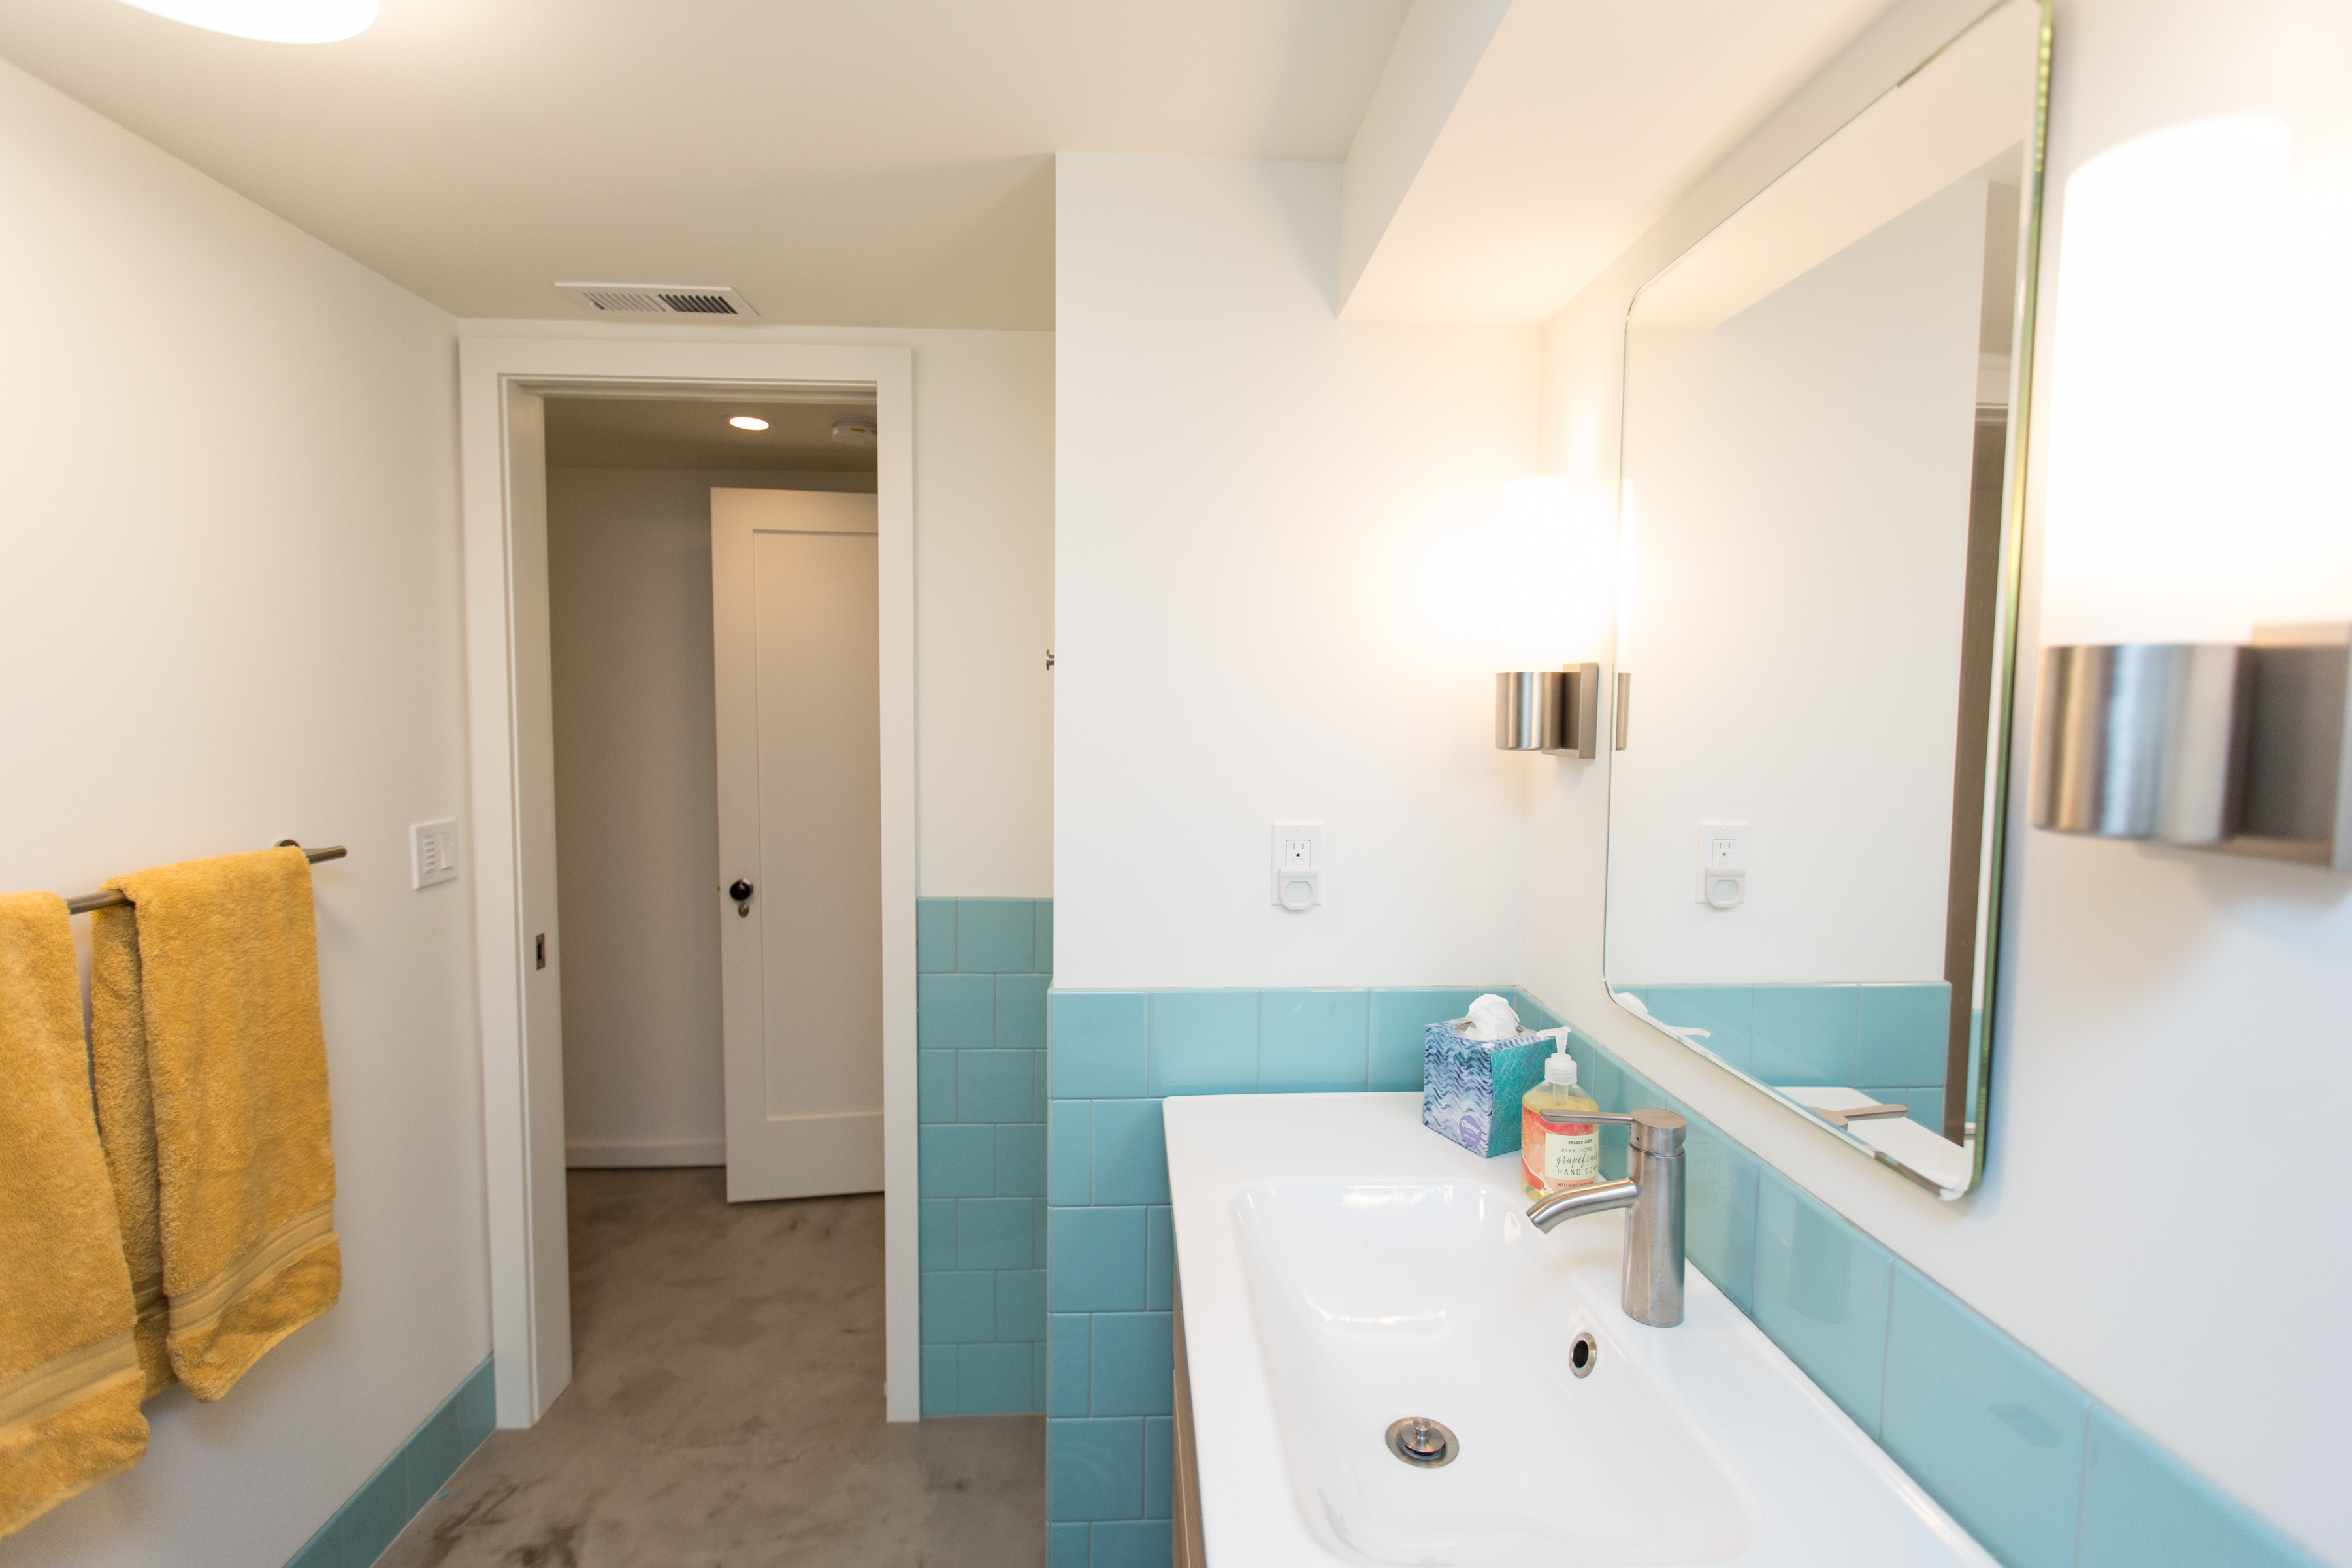 basement bathroom remodel portland - blue tile surround